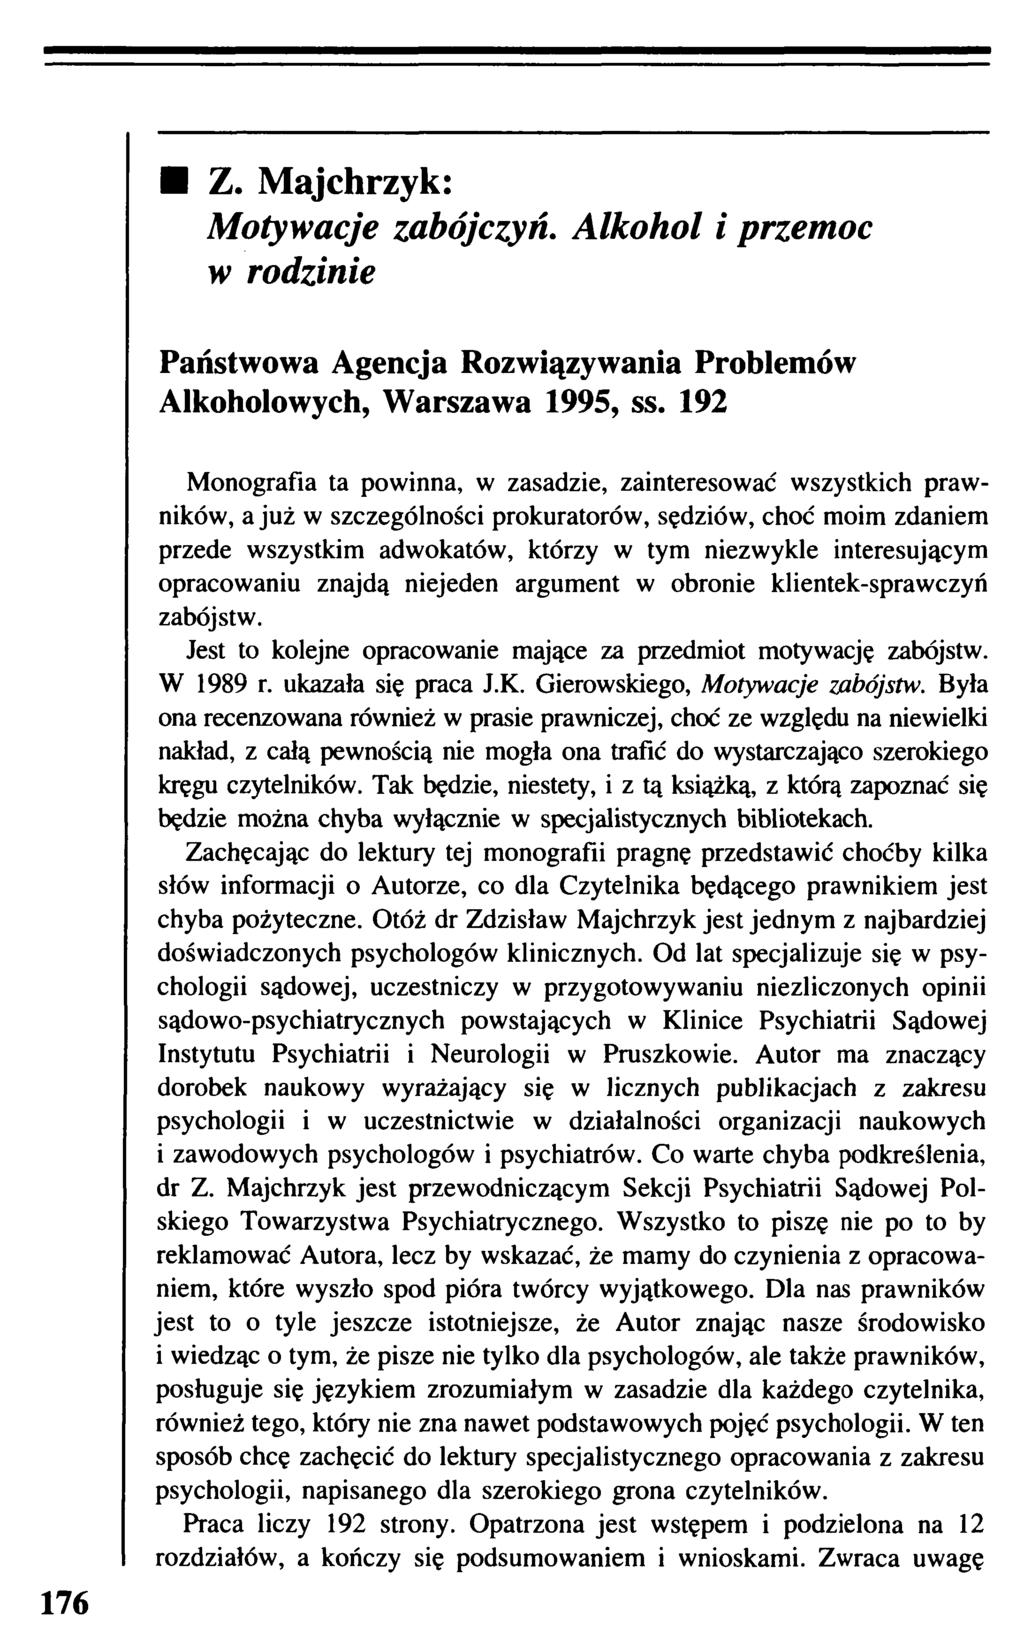 Z. Majchrzyk: Motywacje zabójczyń. Alkohol i przemoc w rodzinie Państwowa Agencja Rozwiązywania Problemów Alkoholowych, Warszawa 1995, ss.